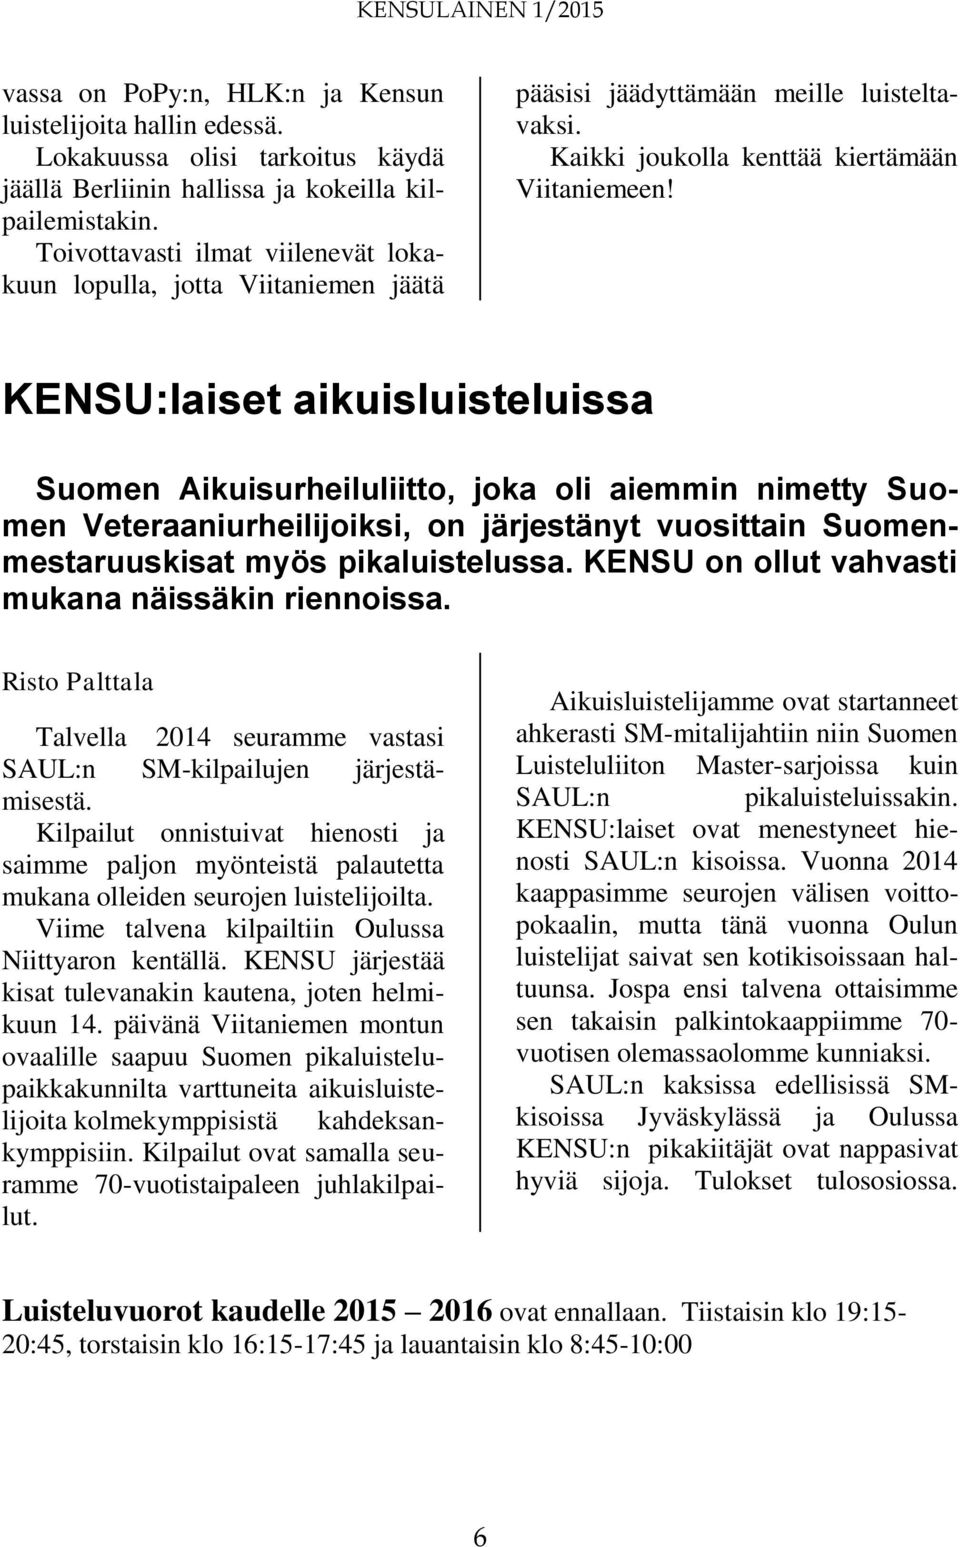 KENSU:laiset aikuisluisteluissa Suomen Aikuisurheiluliitto, joka oli aiemmin nimetty Suomen Veteraaniurheilijoiksi, on järjestänyt vuosittain Suomenmestaruuskisat myös pikaluistelussa.